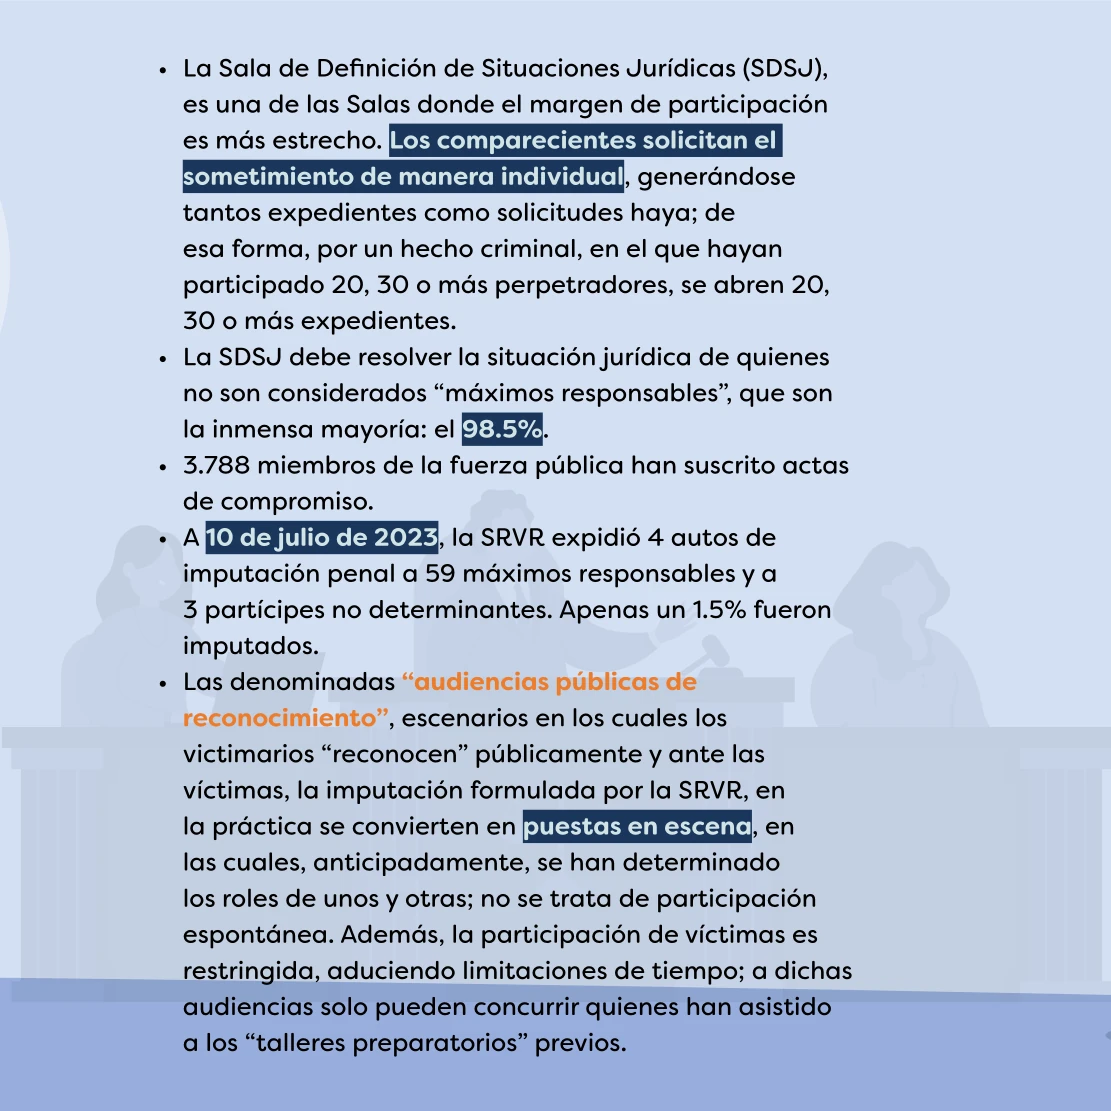 dhColombia Capacitación y gestión del conocimiento en materia de litigio estratégico 4. 08 contraste y realidades JEP